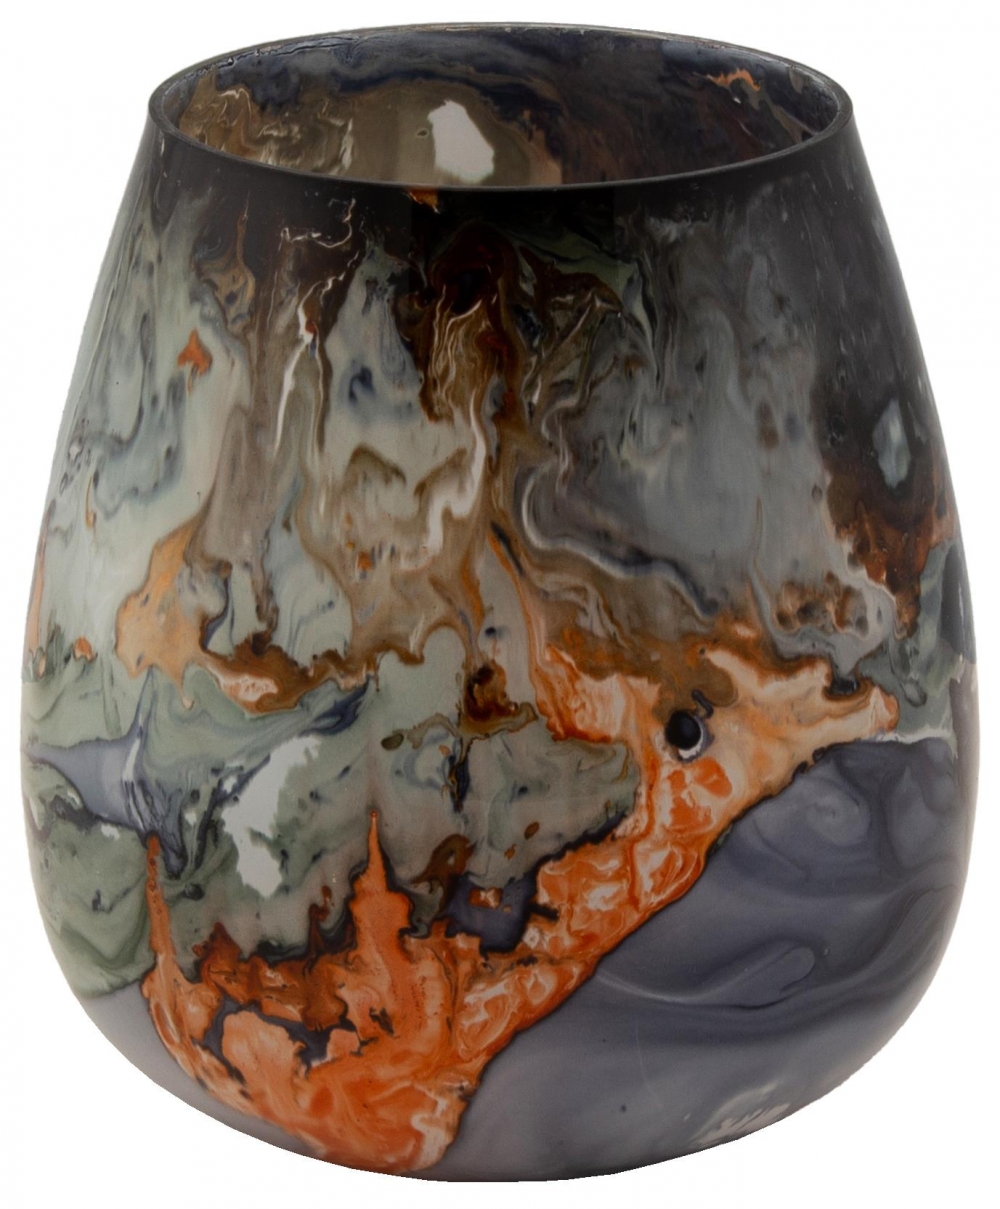 Flott lysglass i et marmorert vakkert mønster. Kan også brukes som vase. Måler 14x13cm.